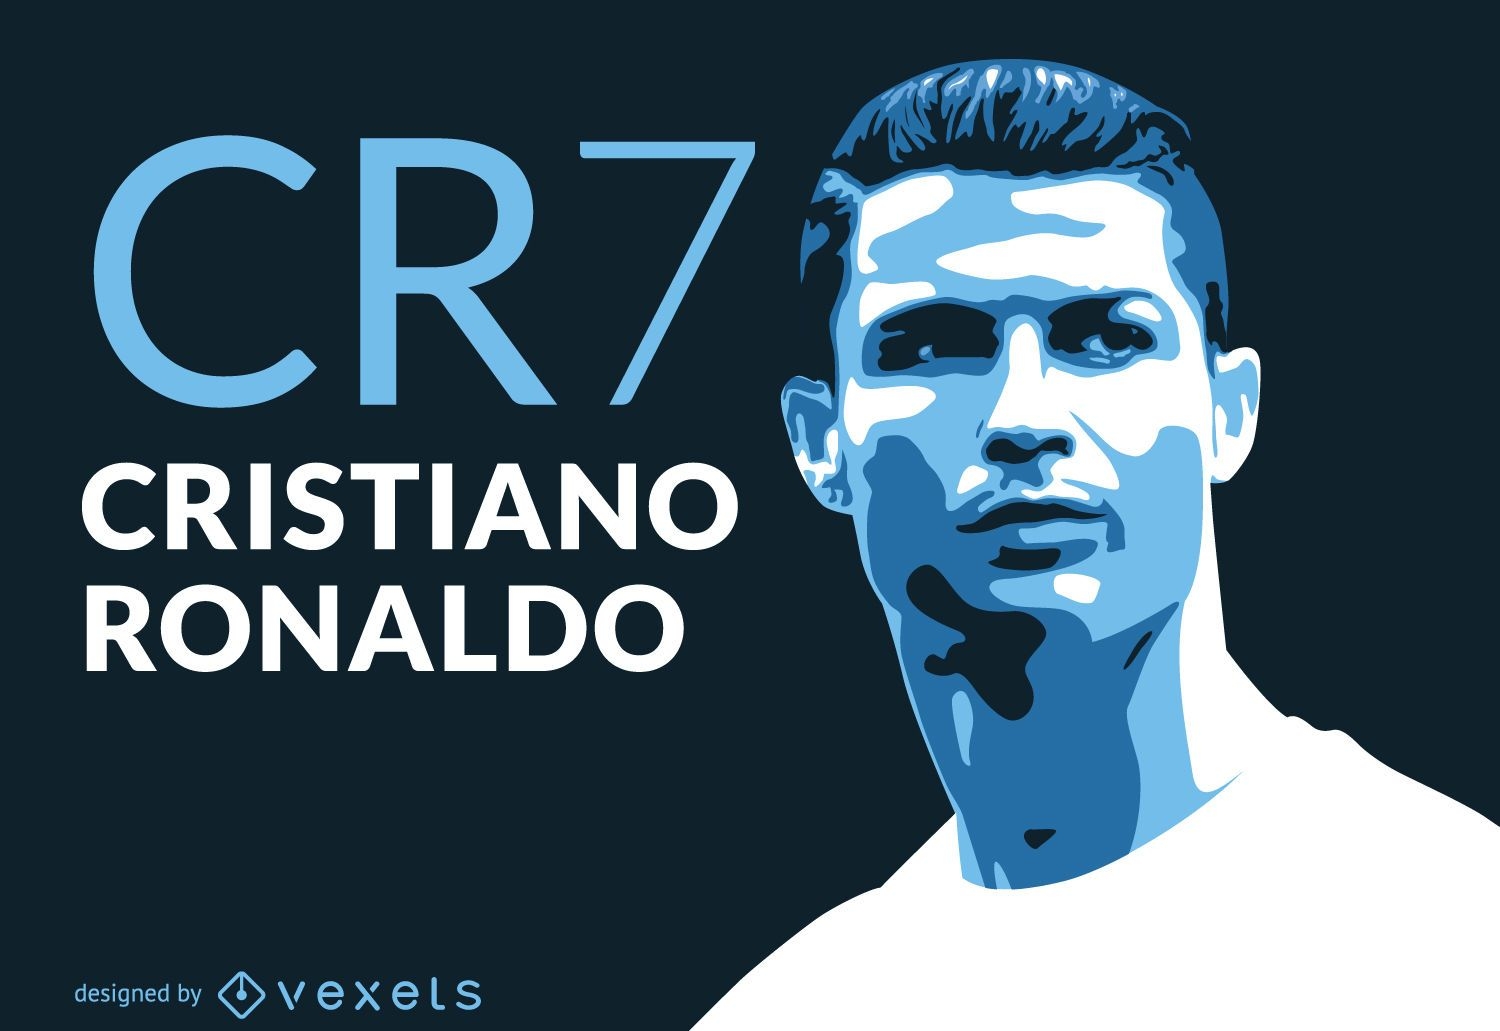 Ilustração de Ronaldo CR7